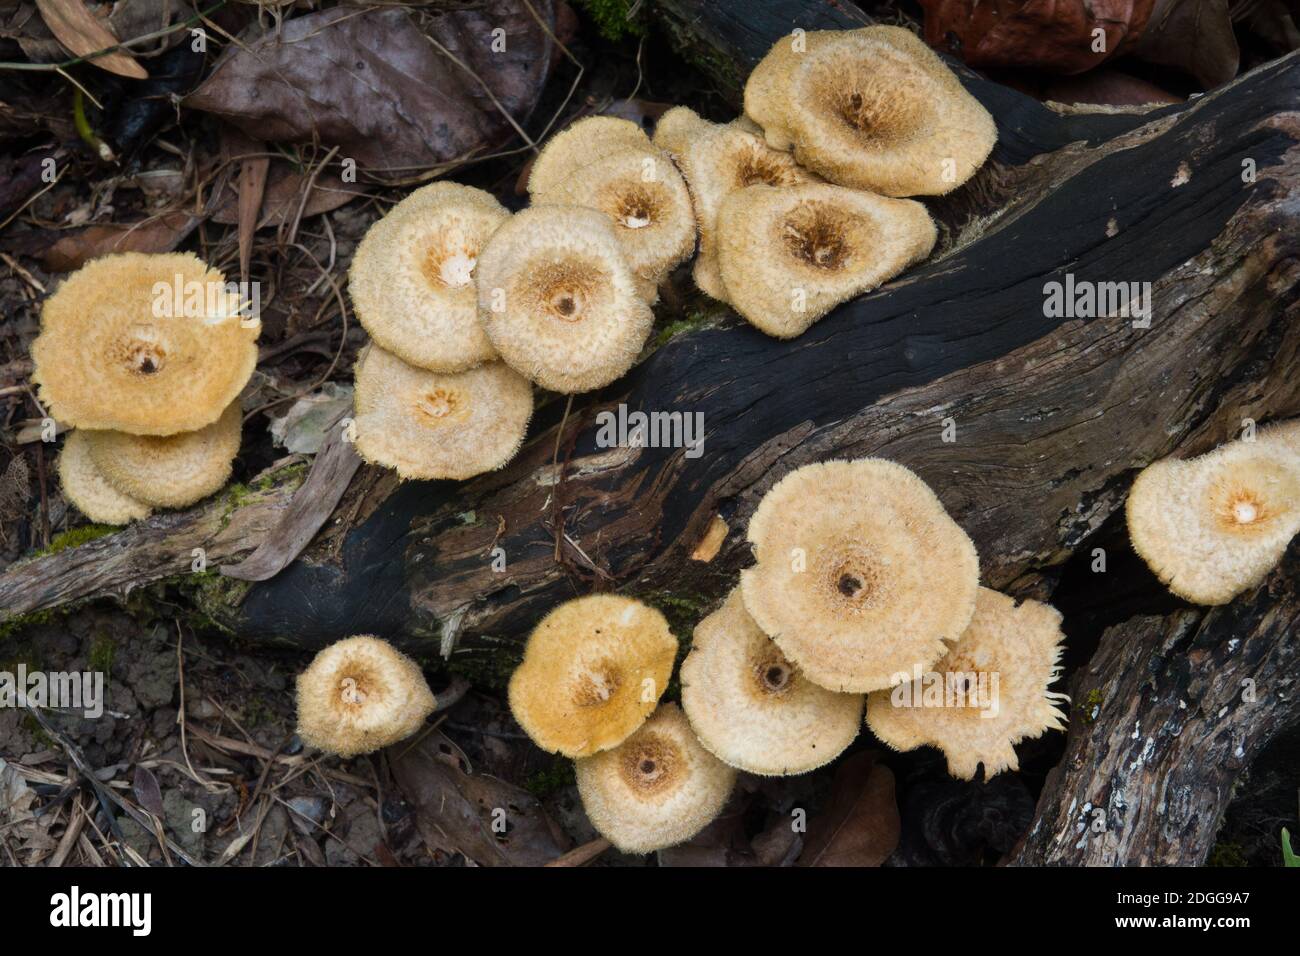 Groupe de champignons de Lentinus crinitus poussant sur le bois dans la sous-croissance forestière. Décembre 2020. Parc national de Daintree, Queensland, Australie Banque D'Images